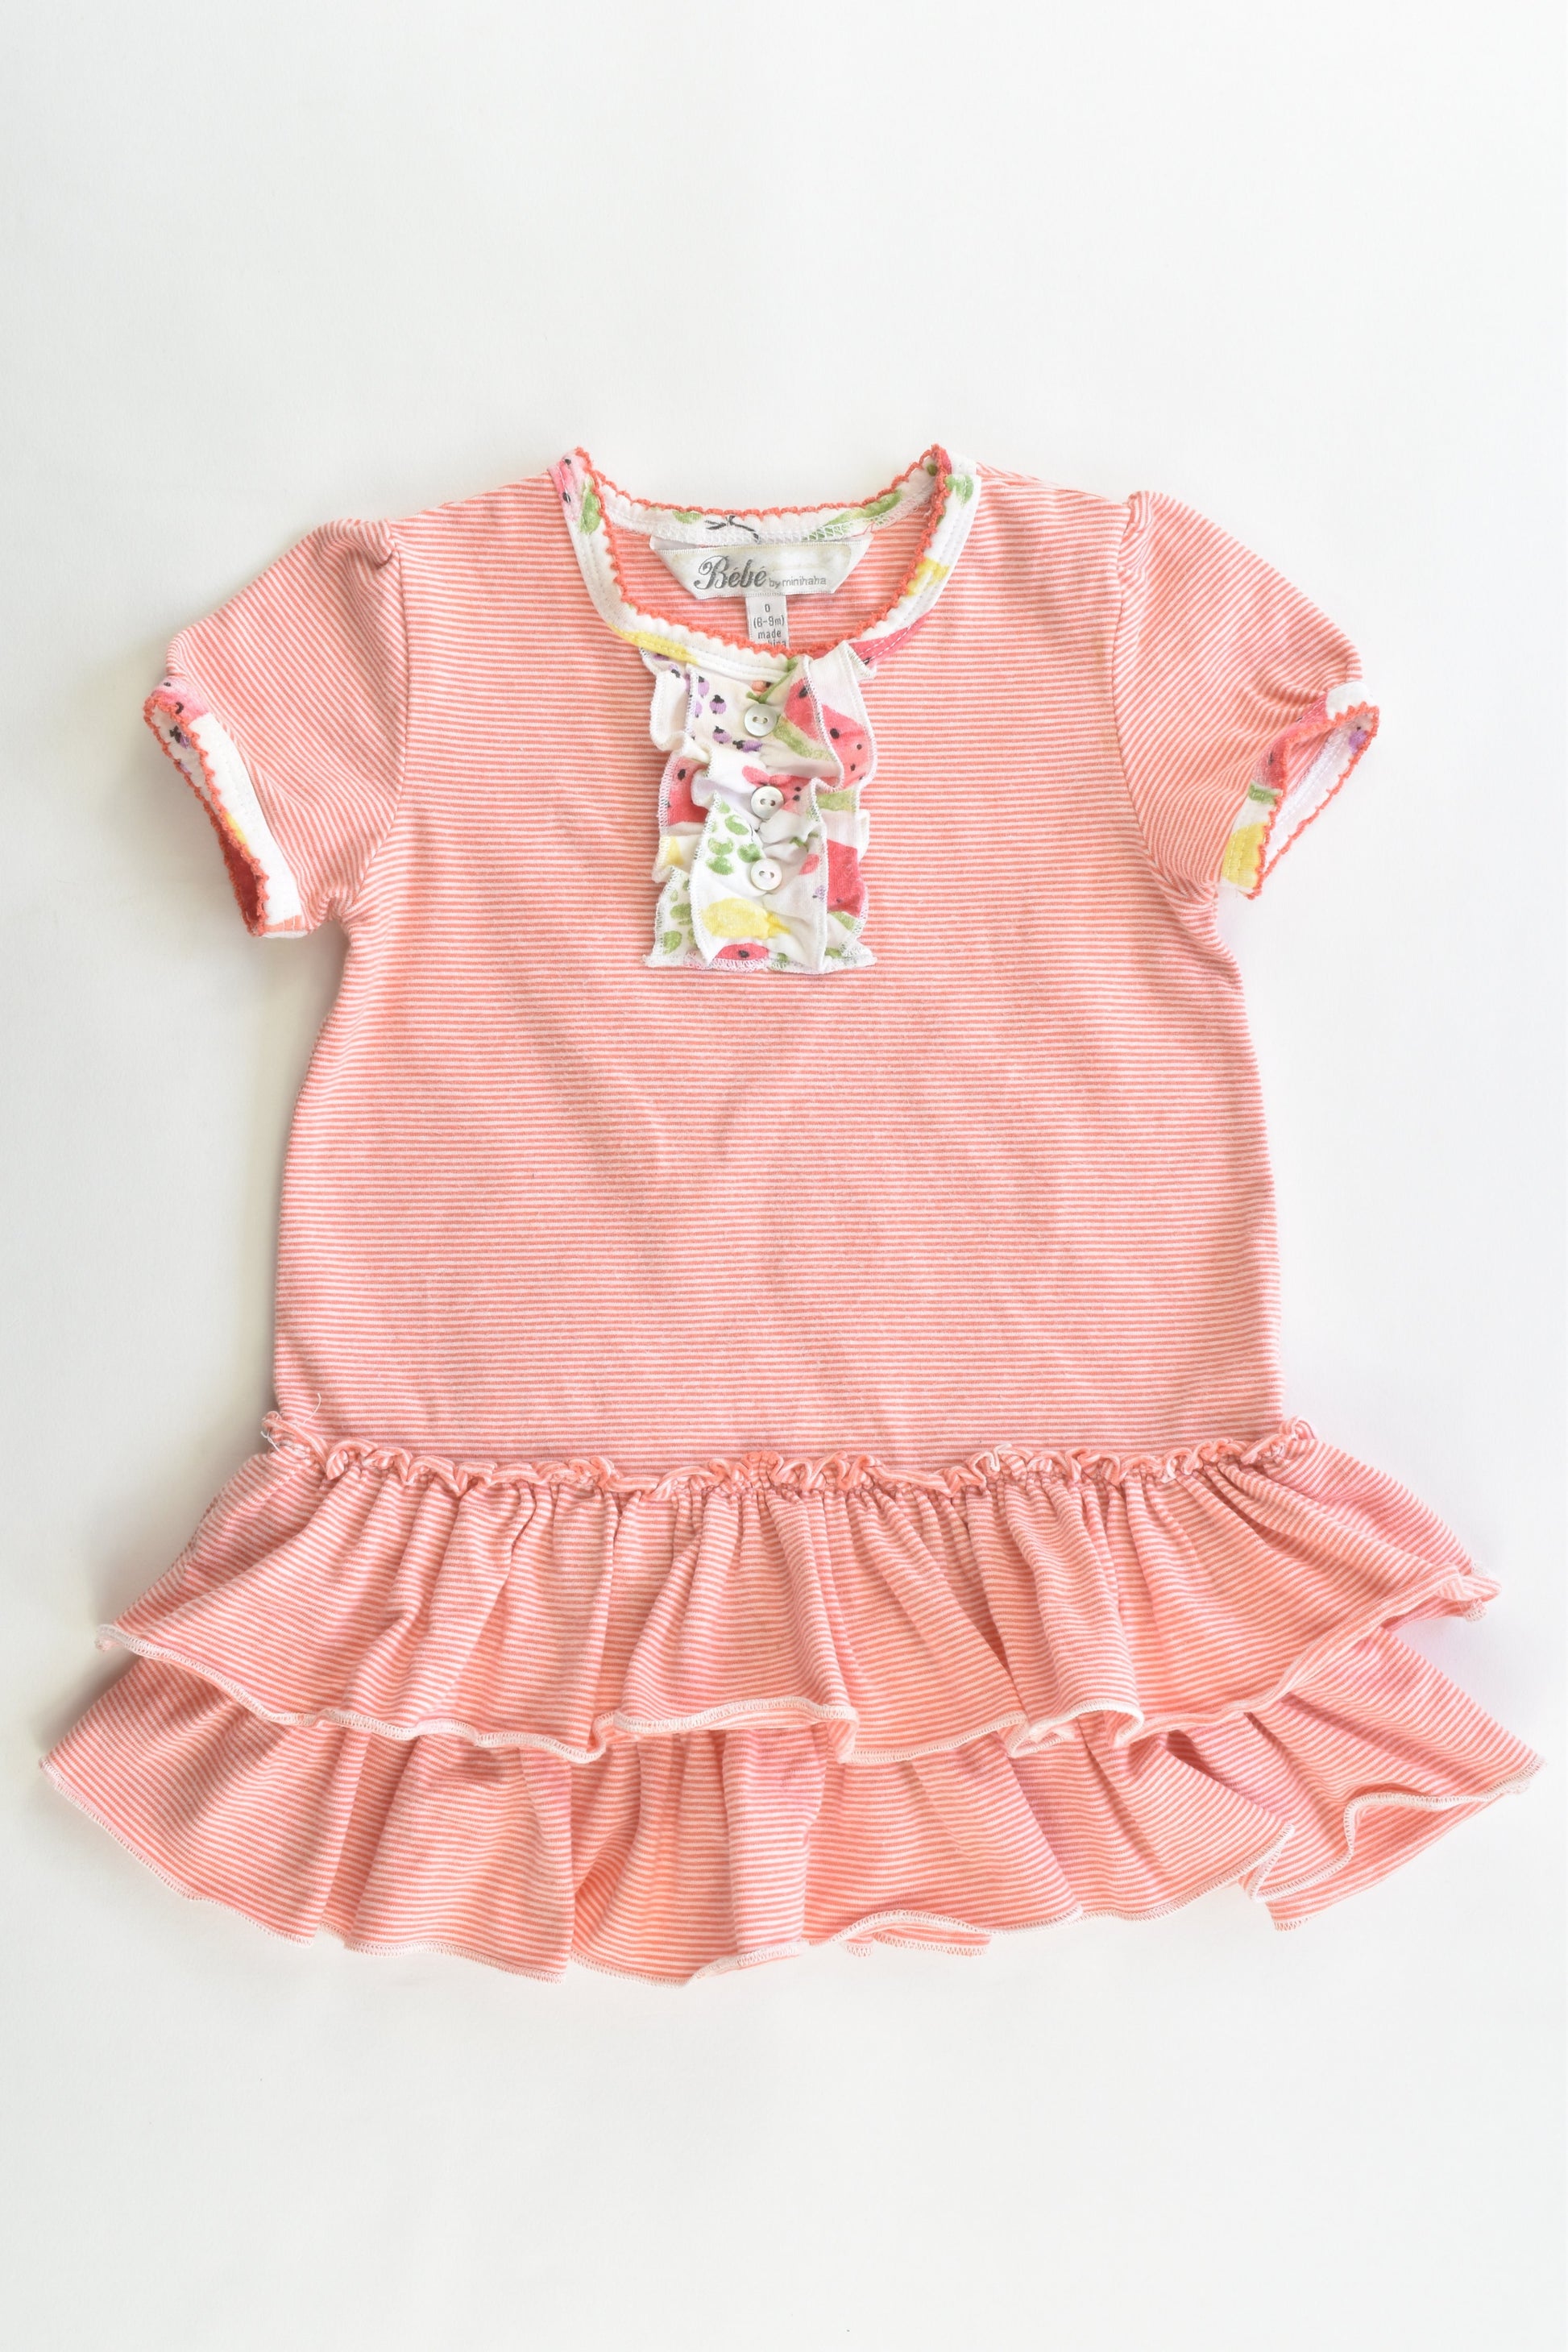 Bébé by Minihaha Size 0 (6-9 months) Dress